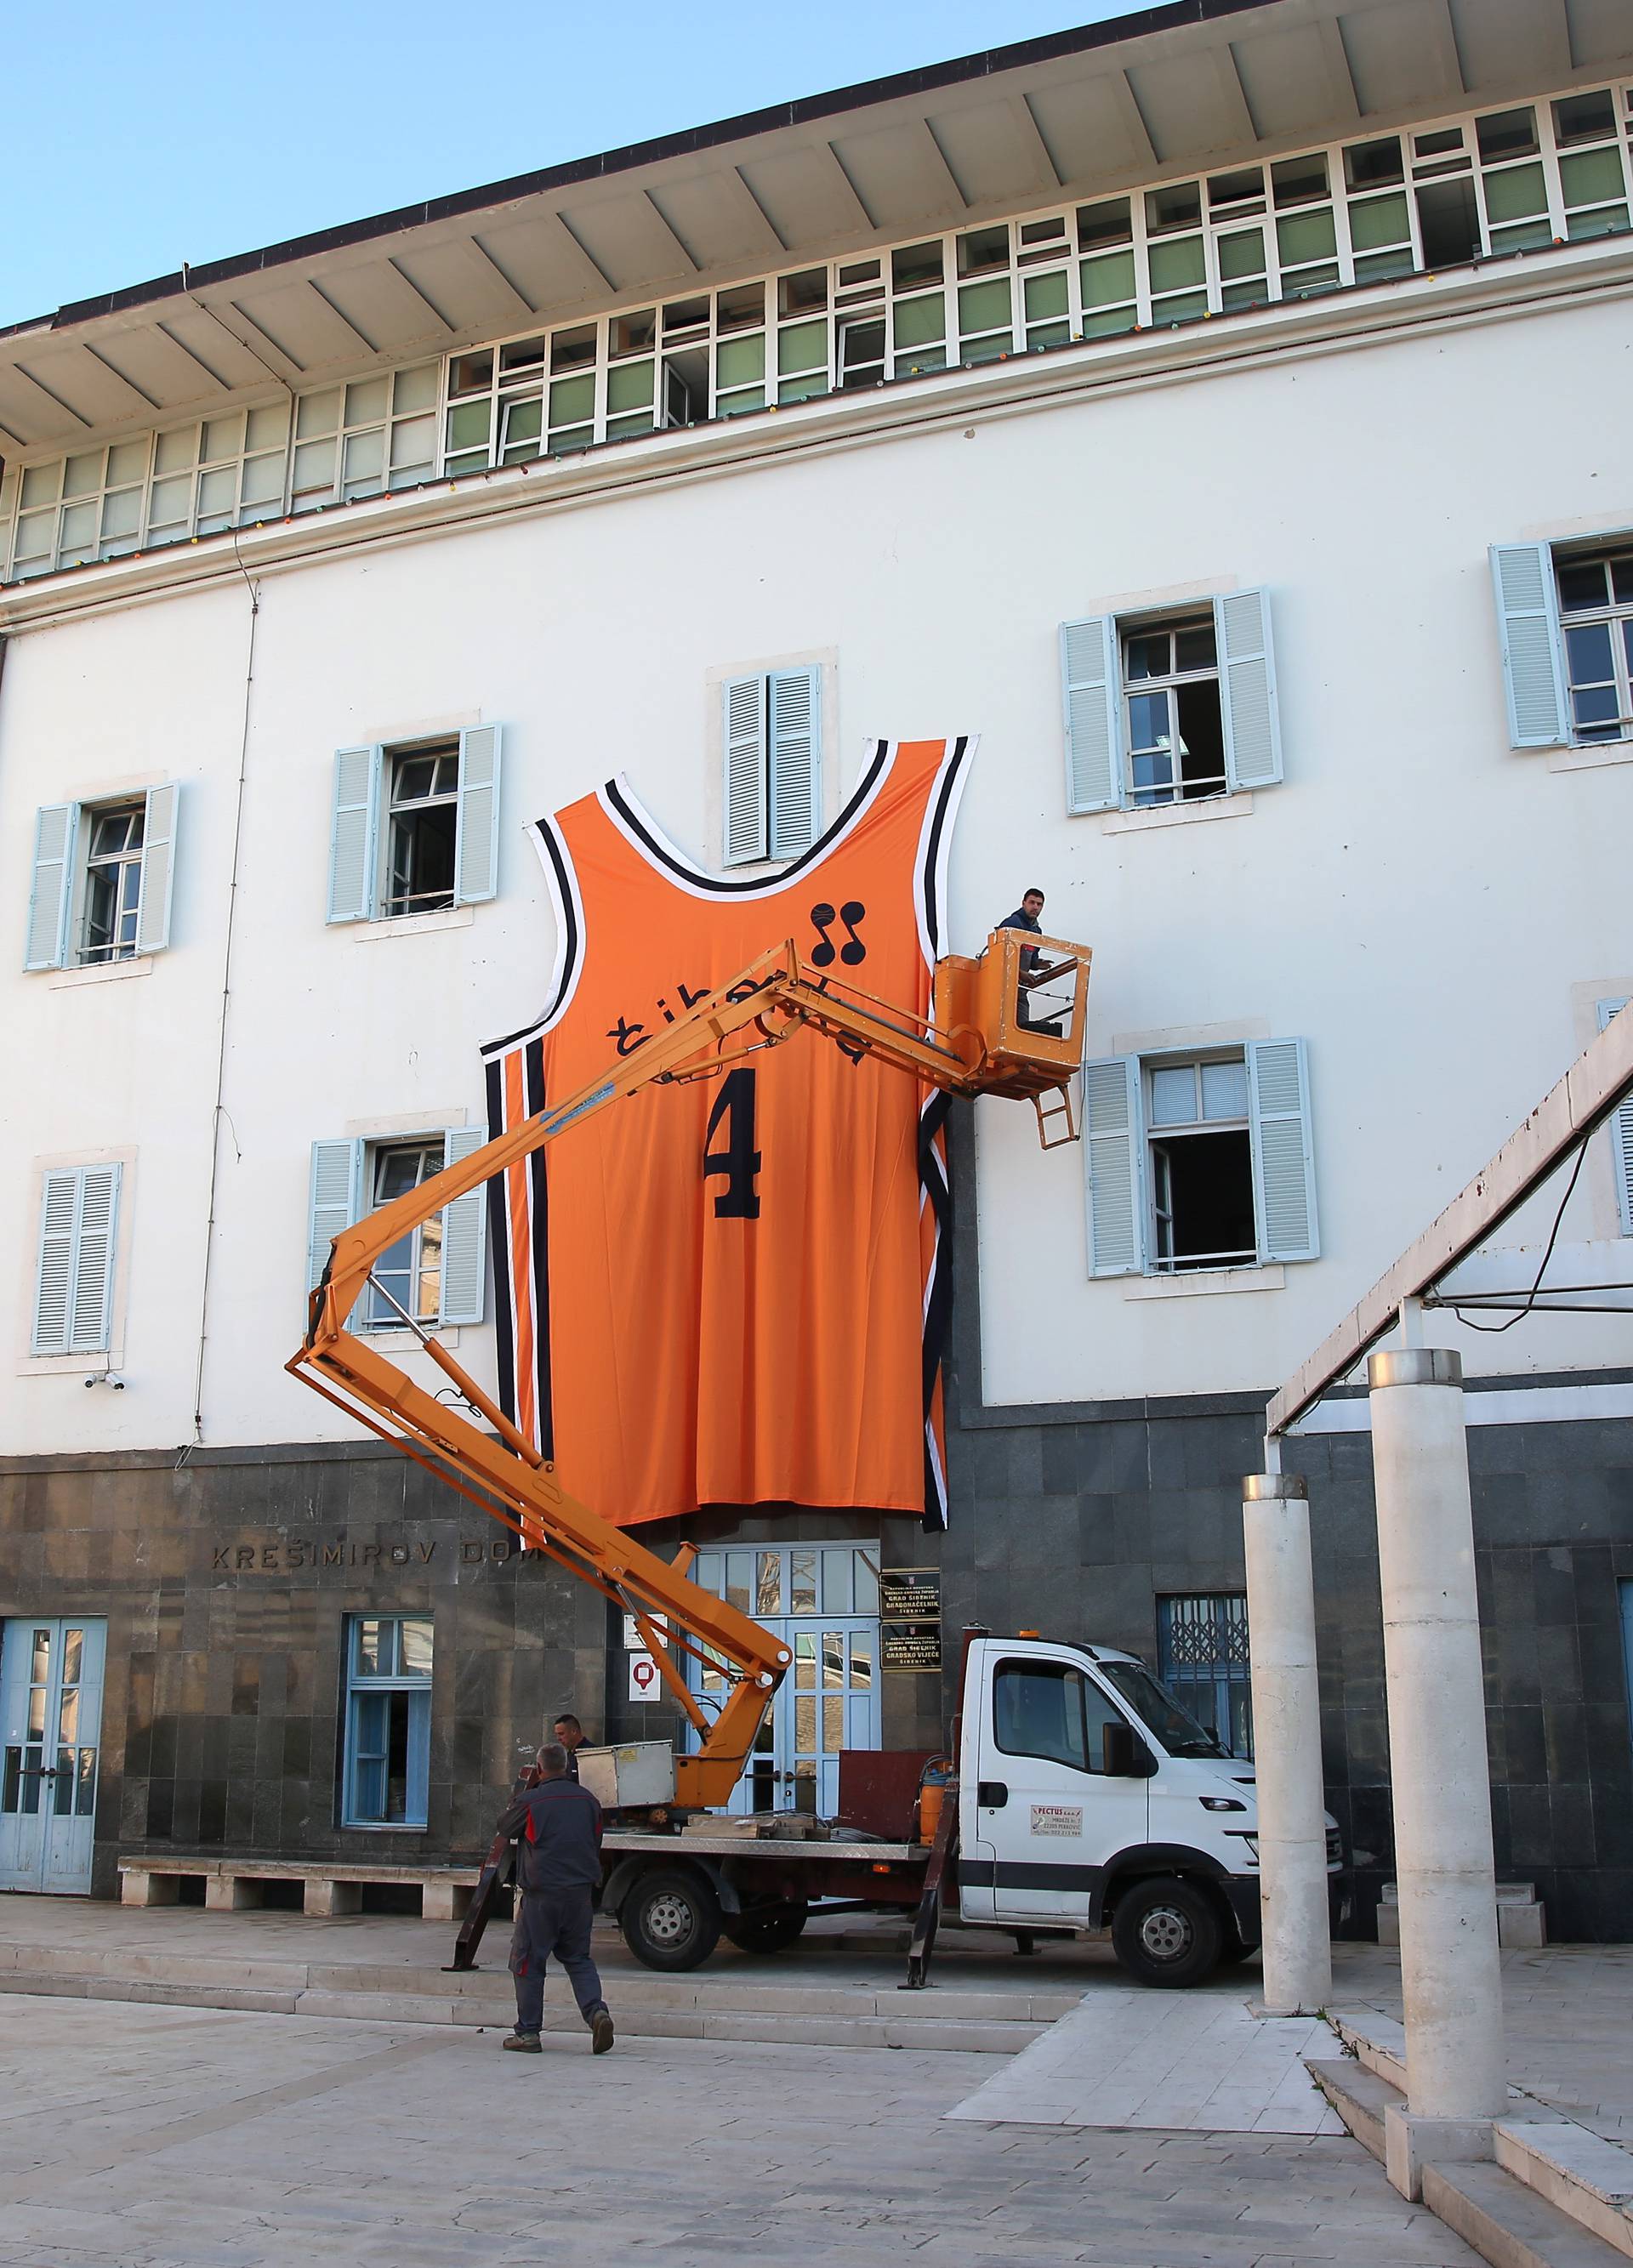 Šibenčanima na ponos: Stavili dres Dražena na zgradu uprave